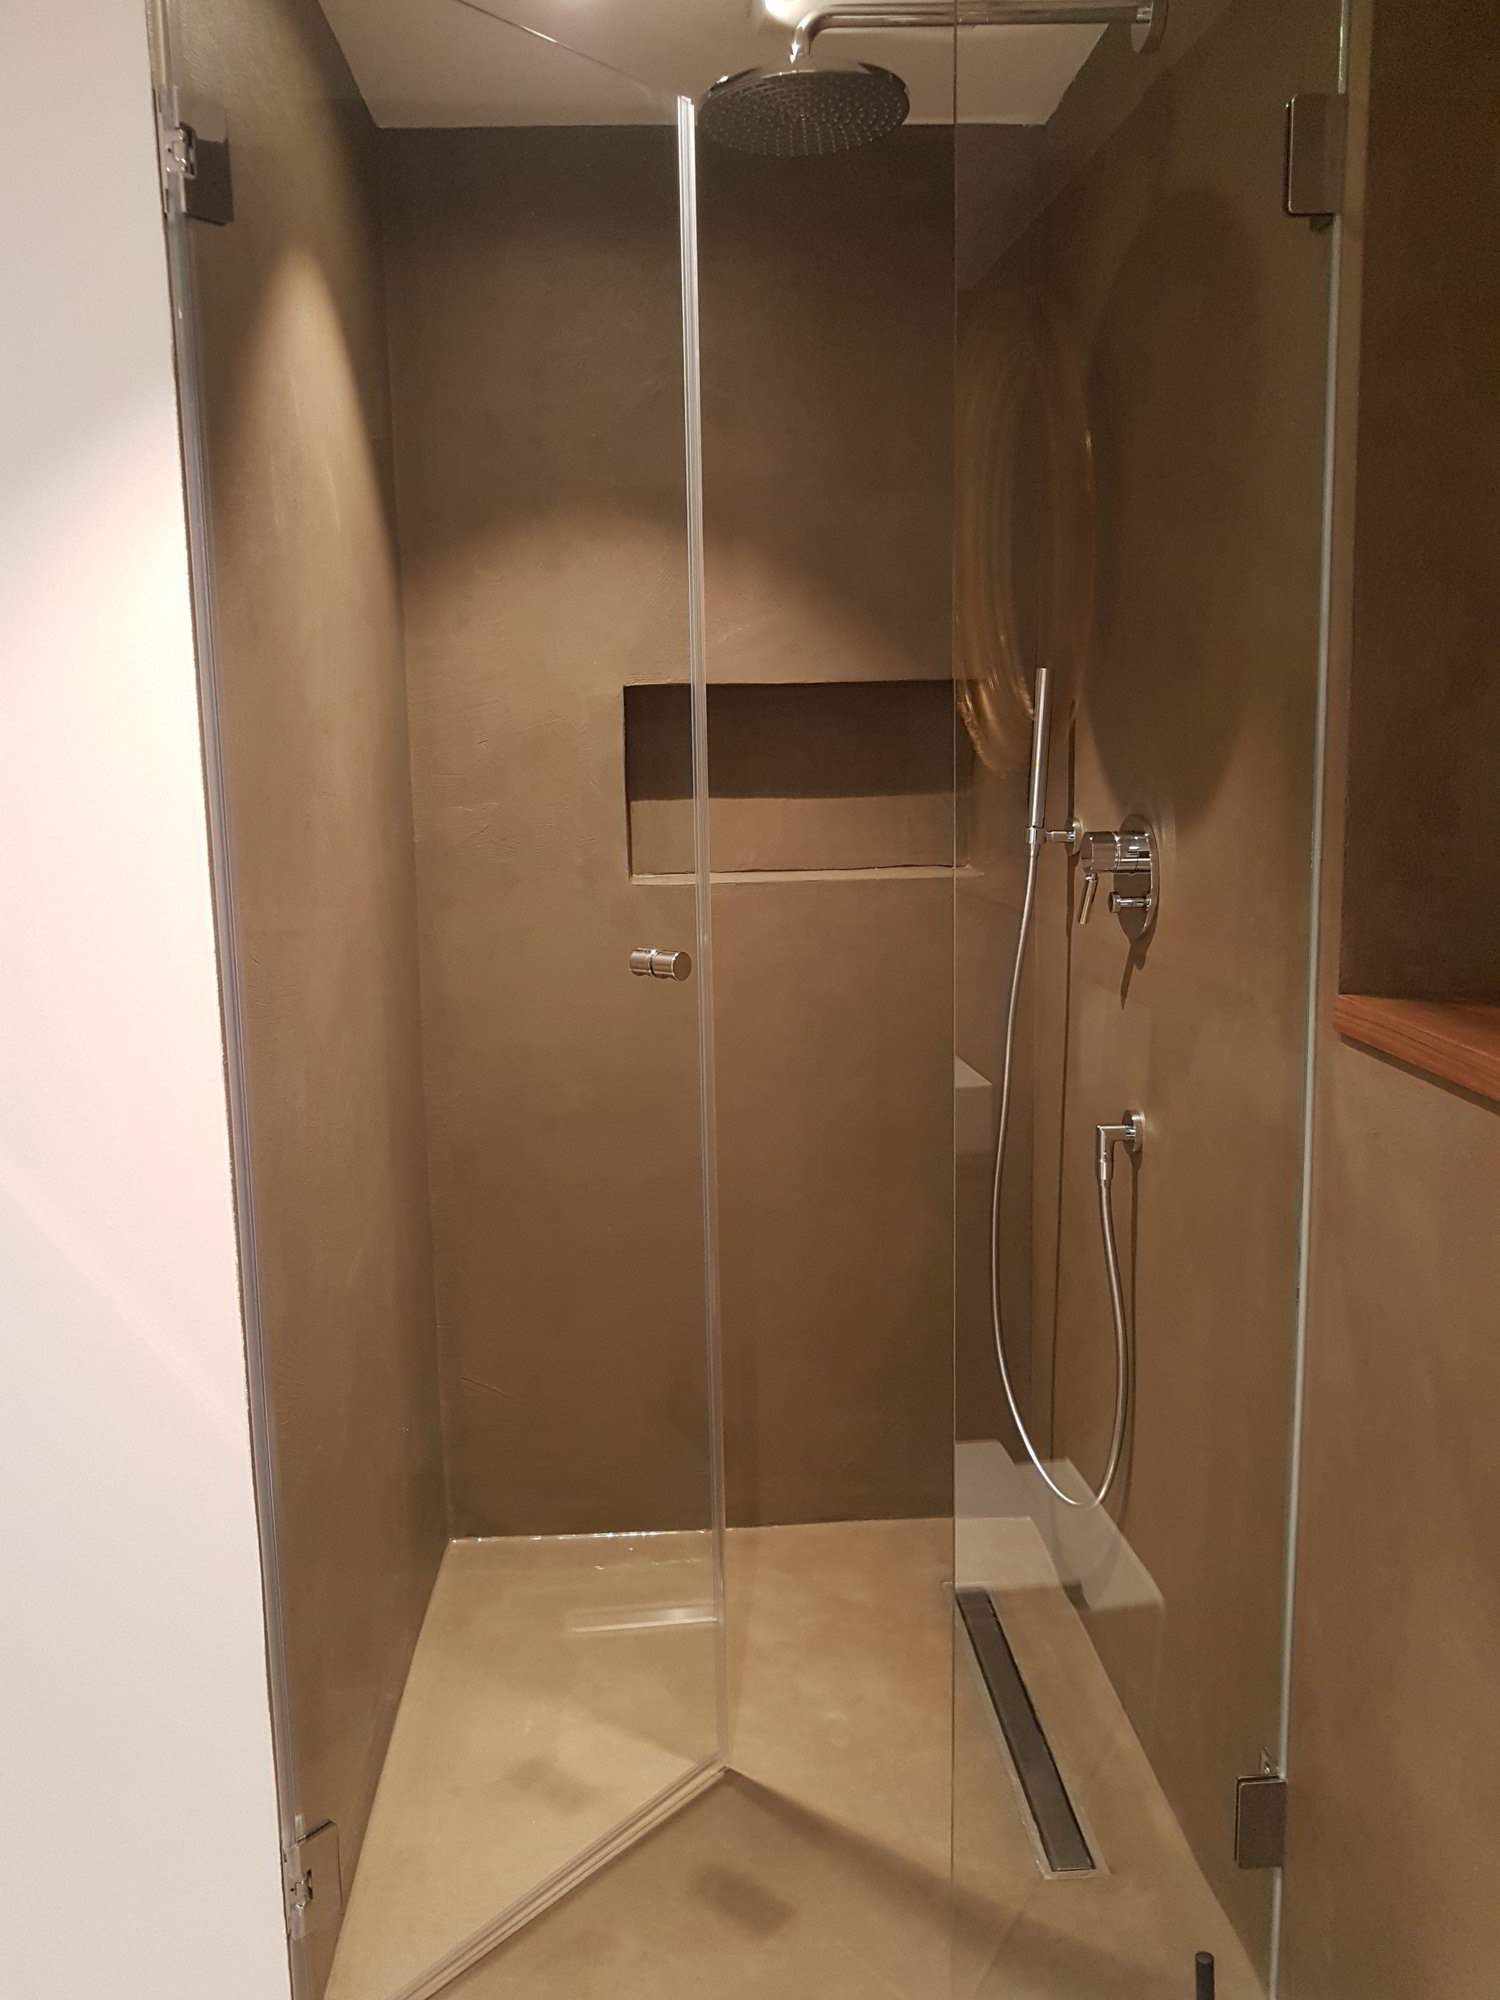 작업 선반과 함께 샤워실에서 마이크로 시멘트의 가벼운 코팅